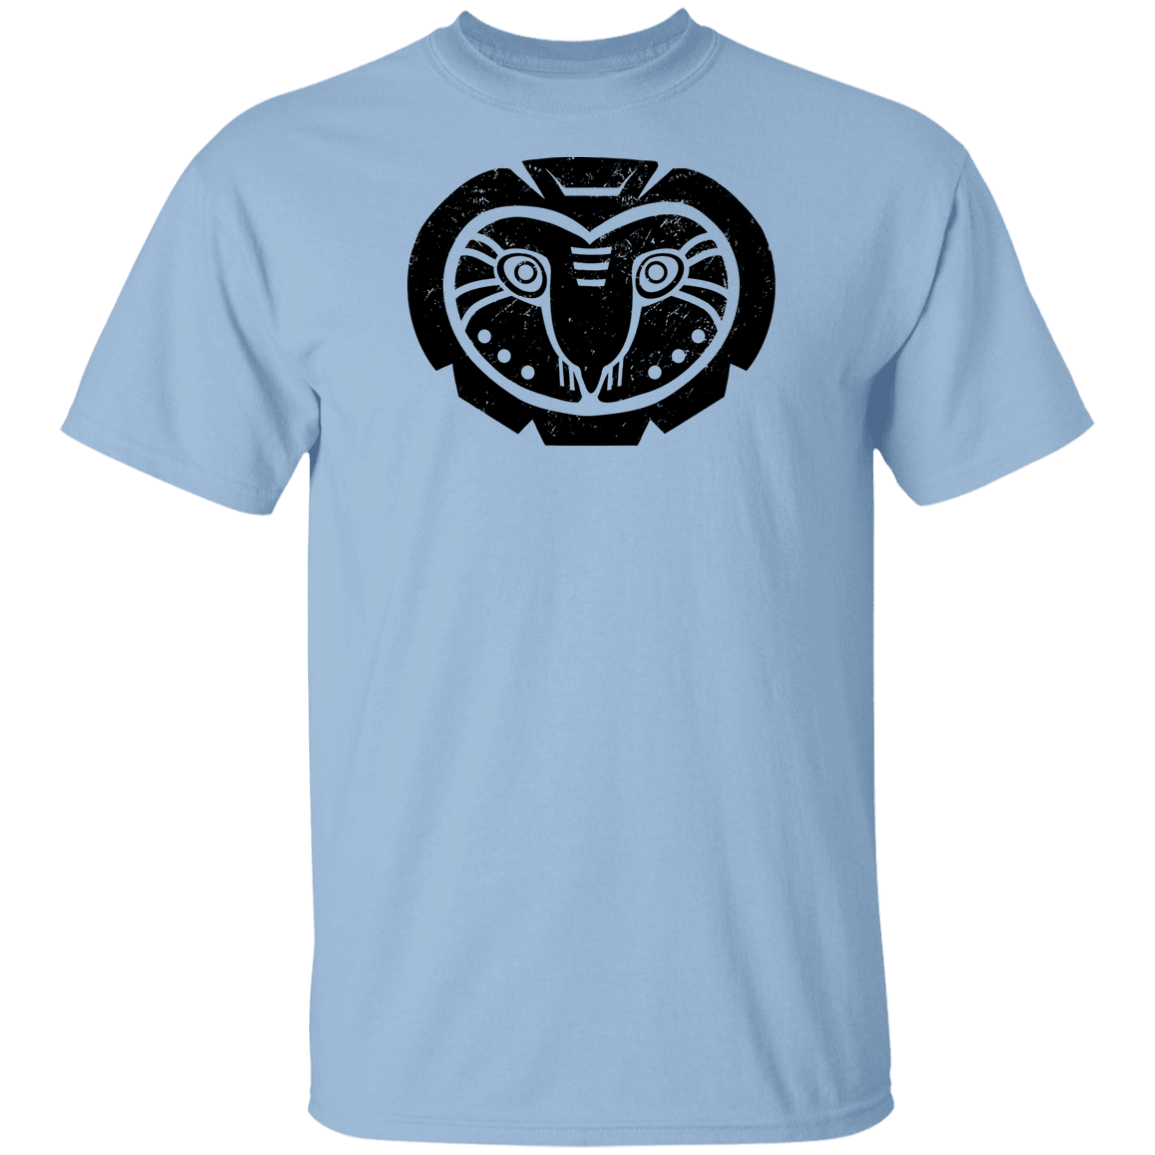 Black Distressed Emblem T-Shirt for Kids (Barn Owl/Grim)